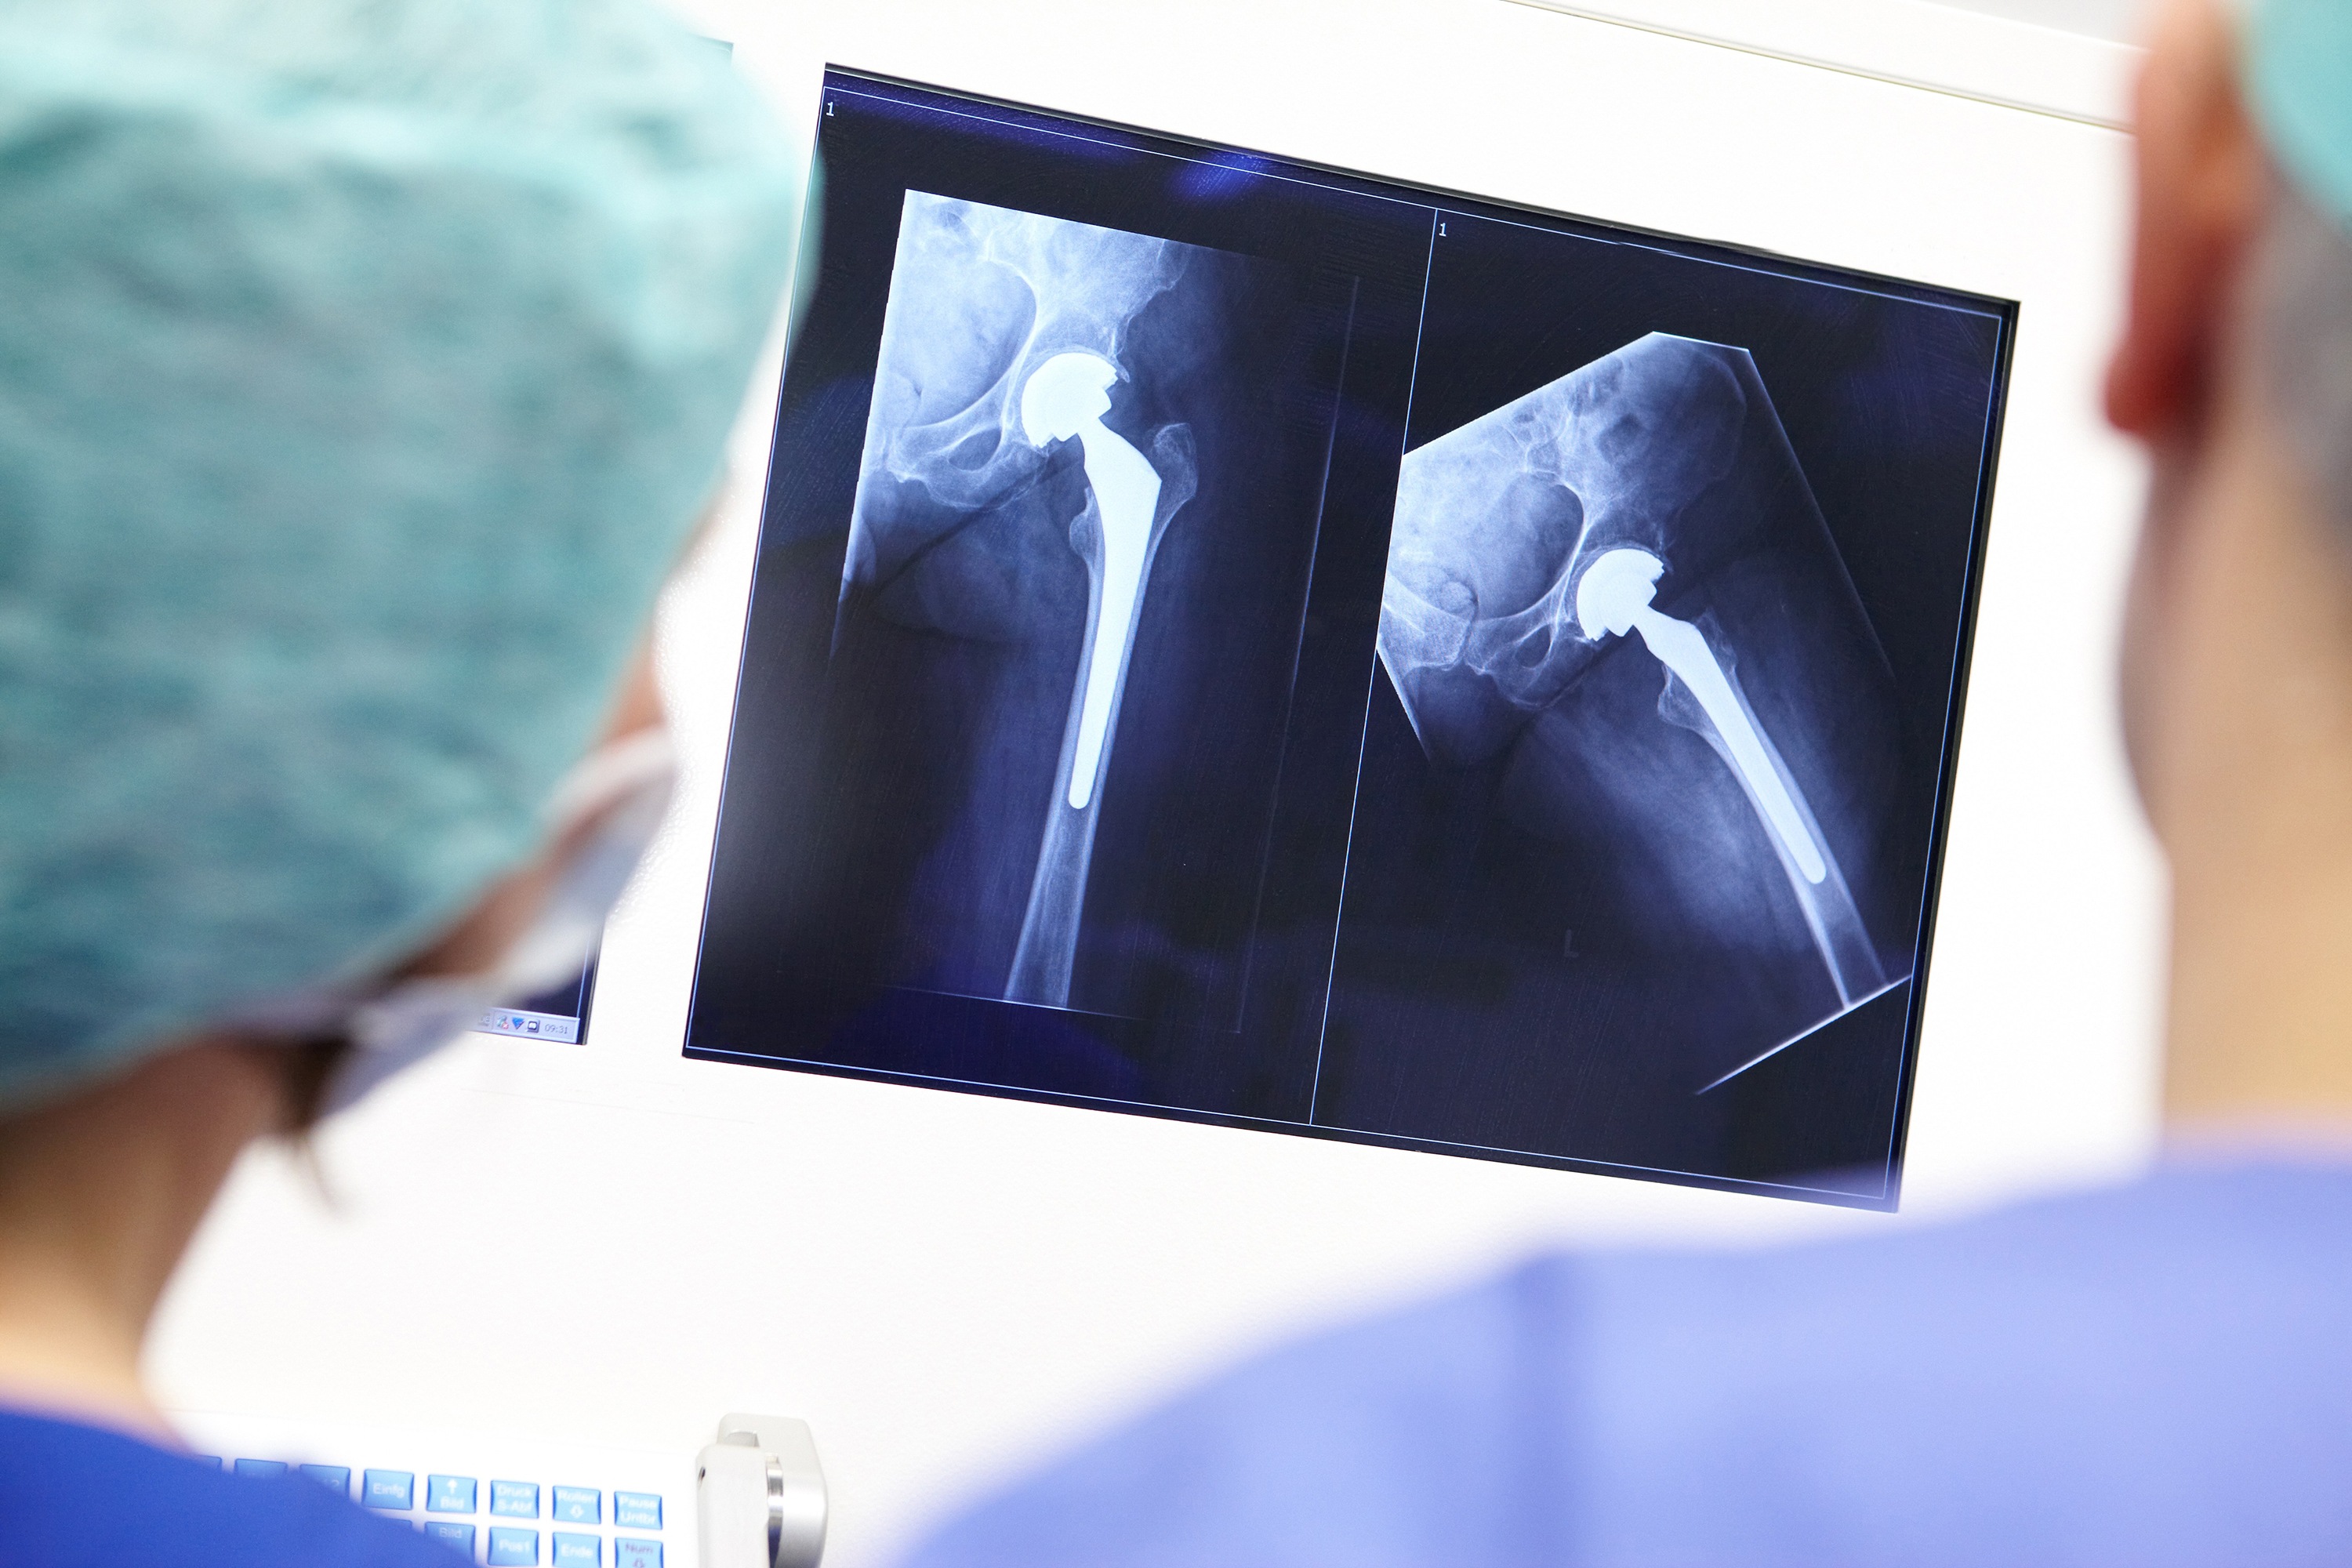 <p>Röntgenbild einer Hüfte nach Einbau eines Implantats. (Bild: BG Klinikum Duisburg / Marcus Gloger / cap communications)&nbsp;</p>